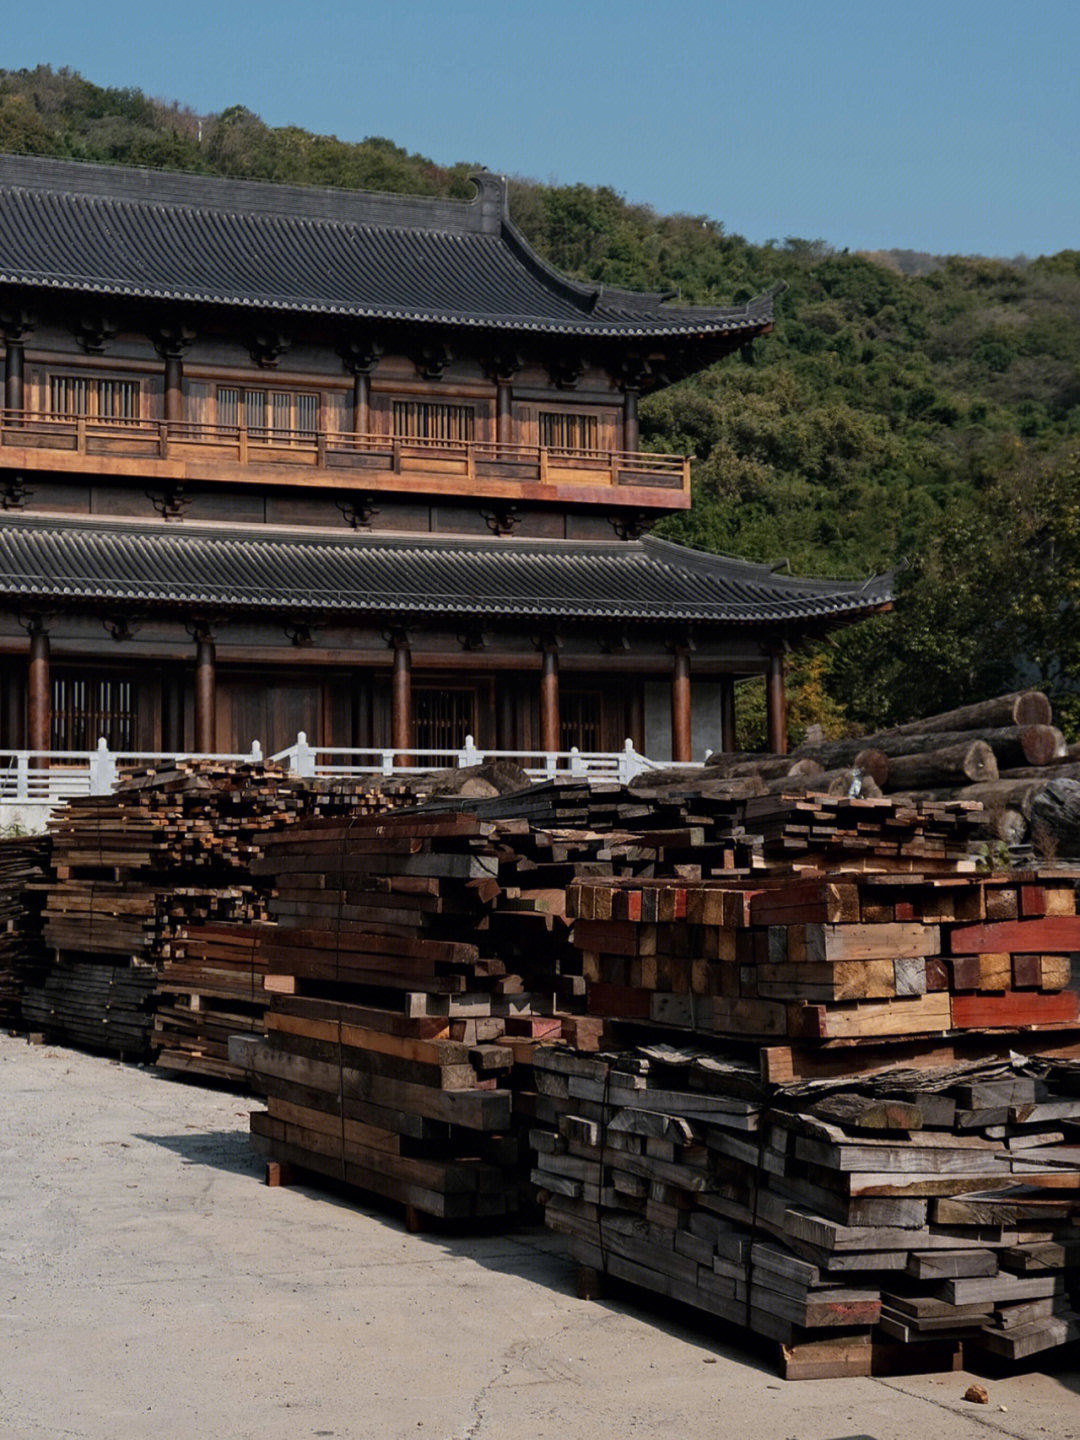 达摩第一道场南京定山寺掠影是日游息